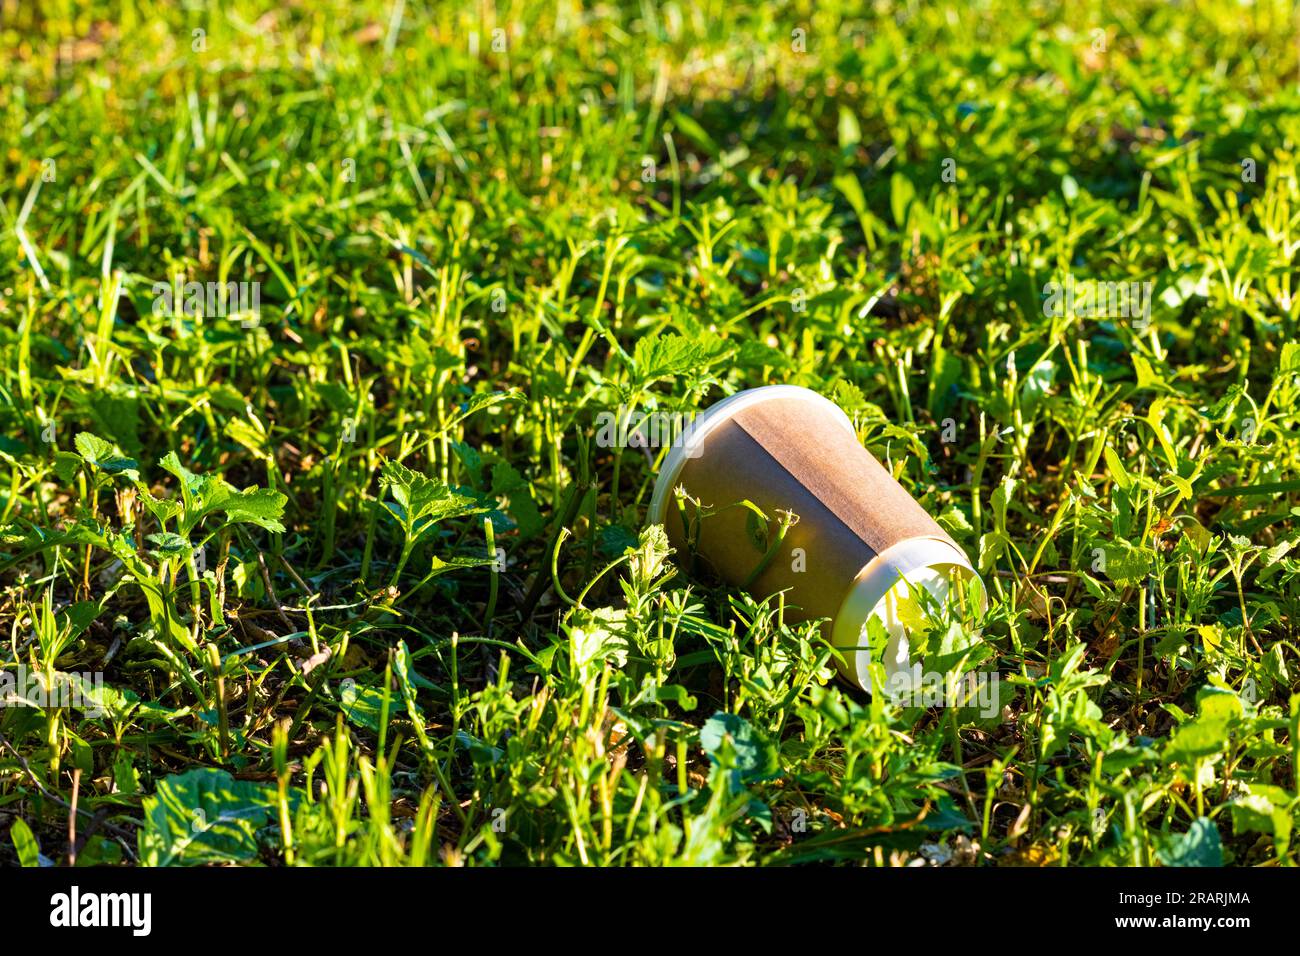 Ein Pappbecher liegt im grünen Gras. Gebrauchter Einwegbecher. Umweltverschmutzung Stockfoto